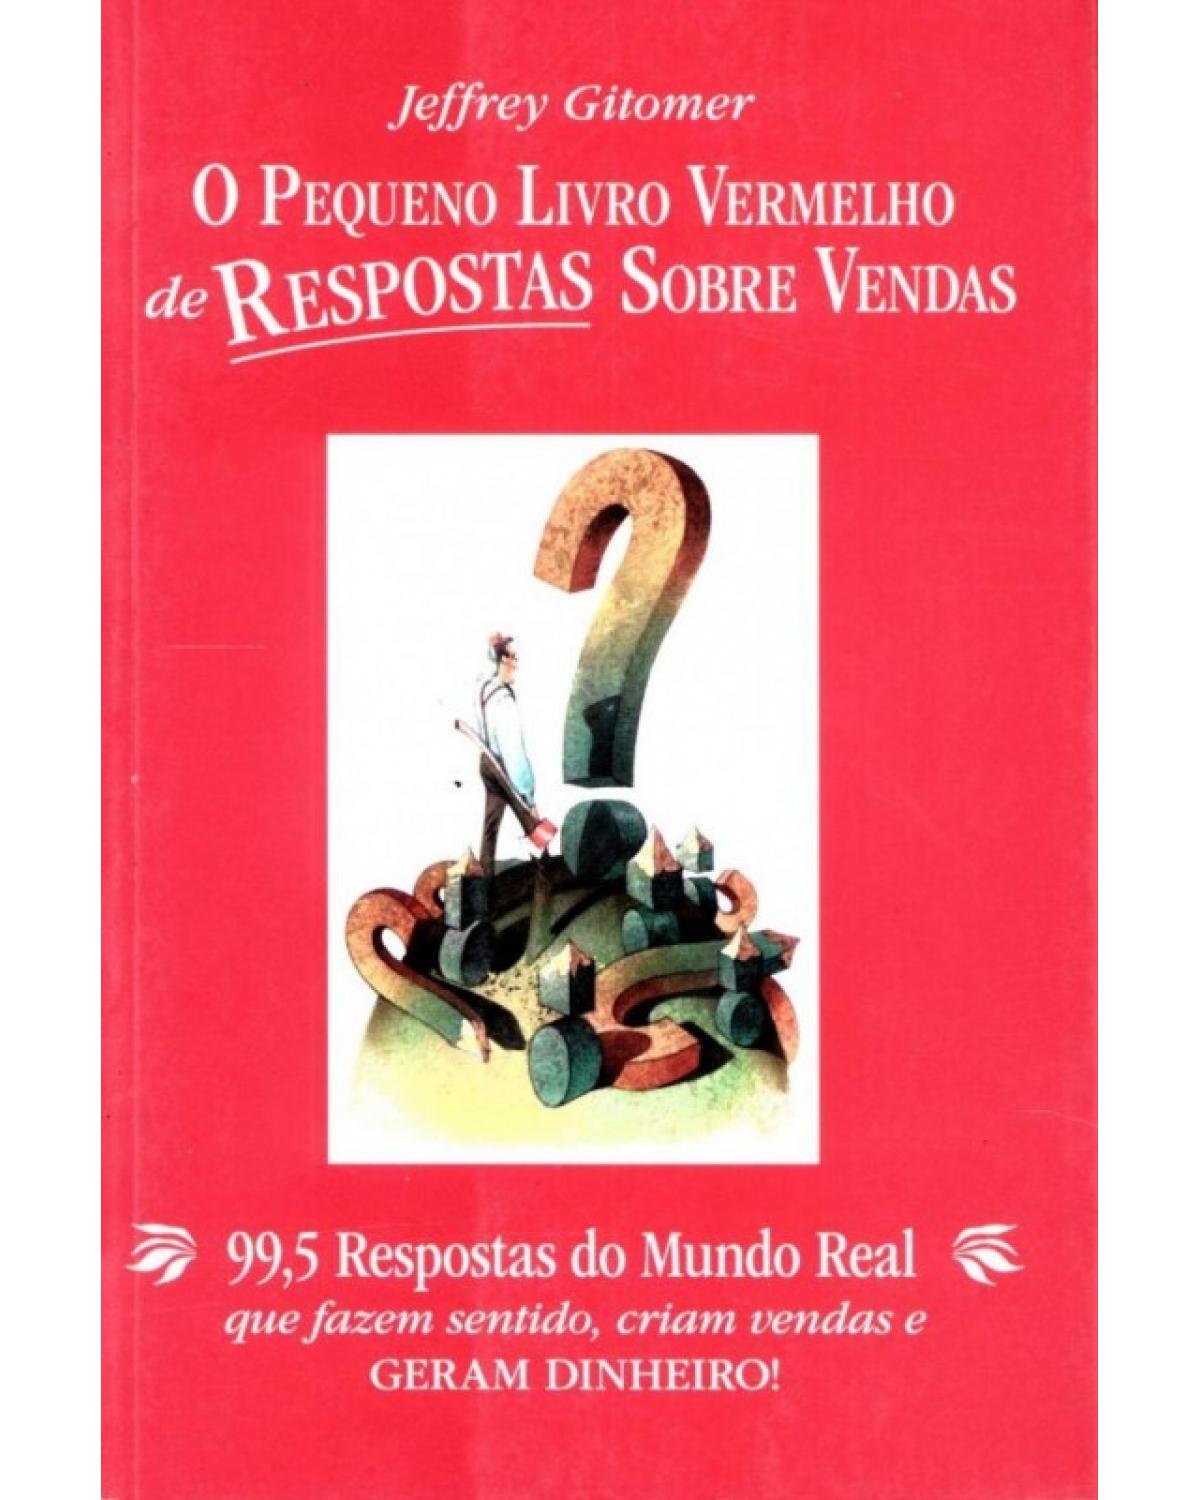 O pequeno livro vermelho de respostas sobre vendas - 99,5 respostas do mundo real que fazem sentido, criam vendas e geram dinheiro! - 1ª Edição | 2008